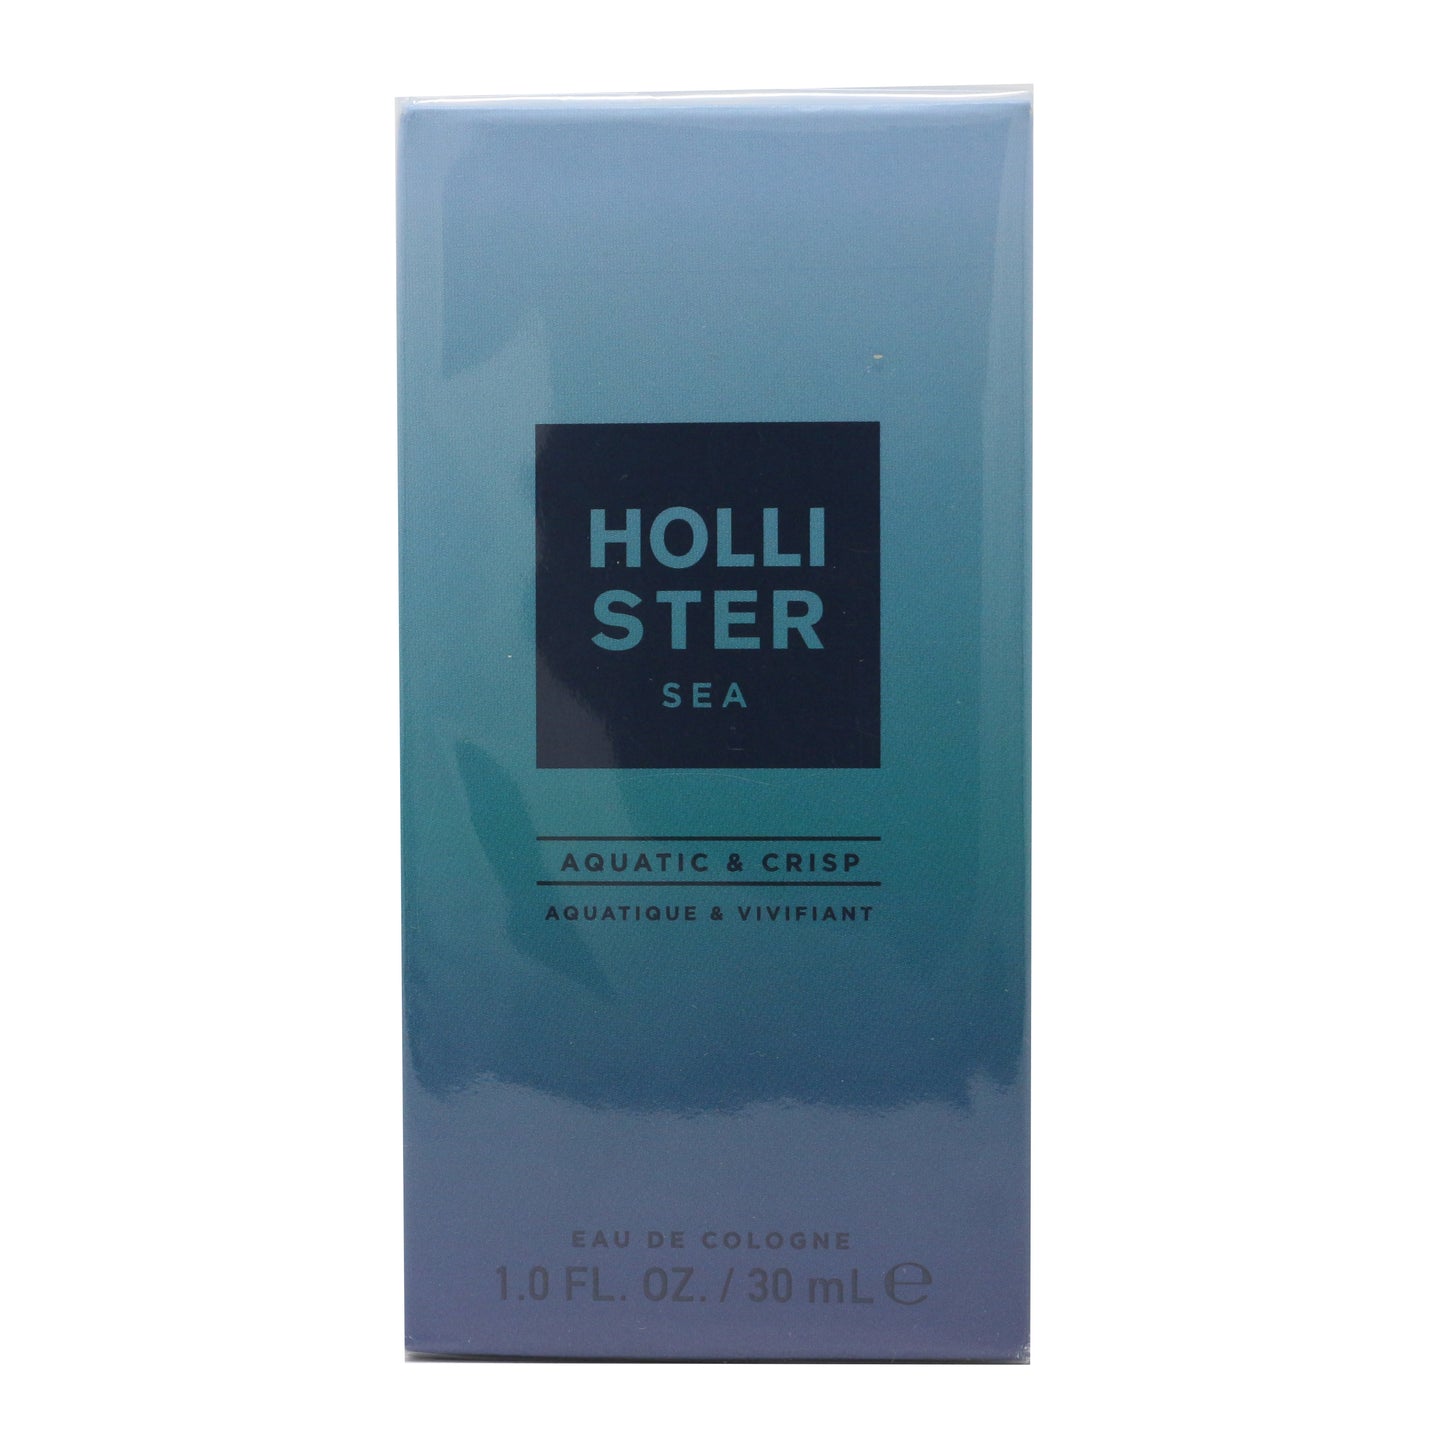 Hollister Sea Aquatic & Crisp Eau De Cologne 1oz/30ml New In Box